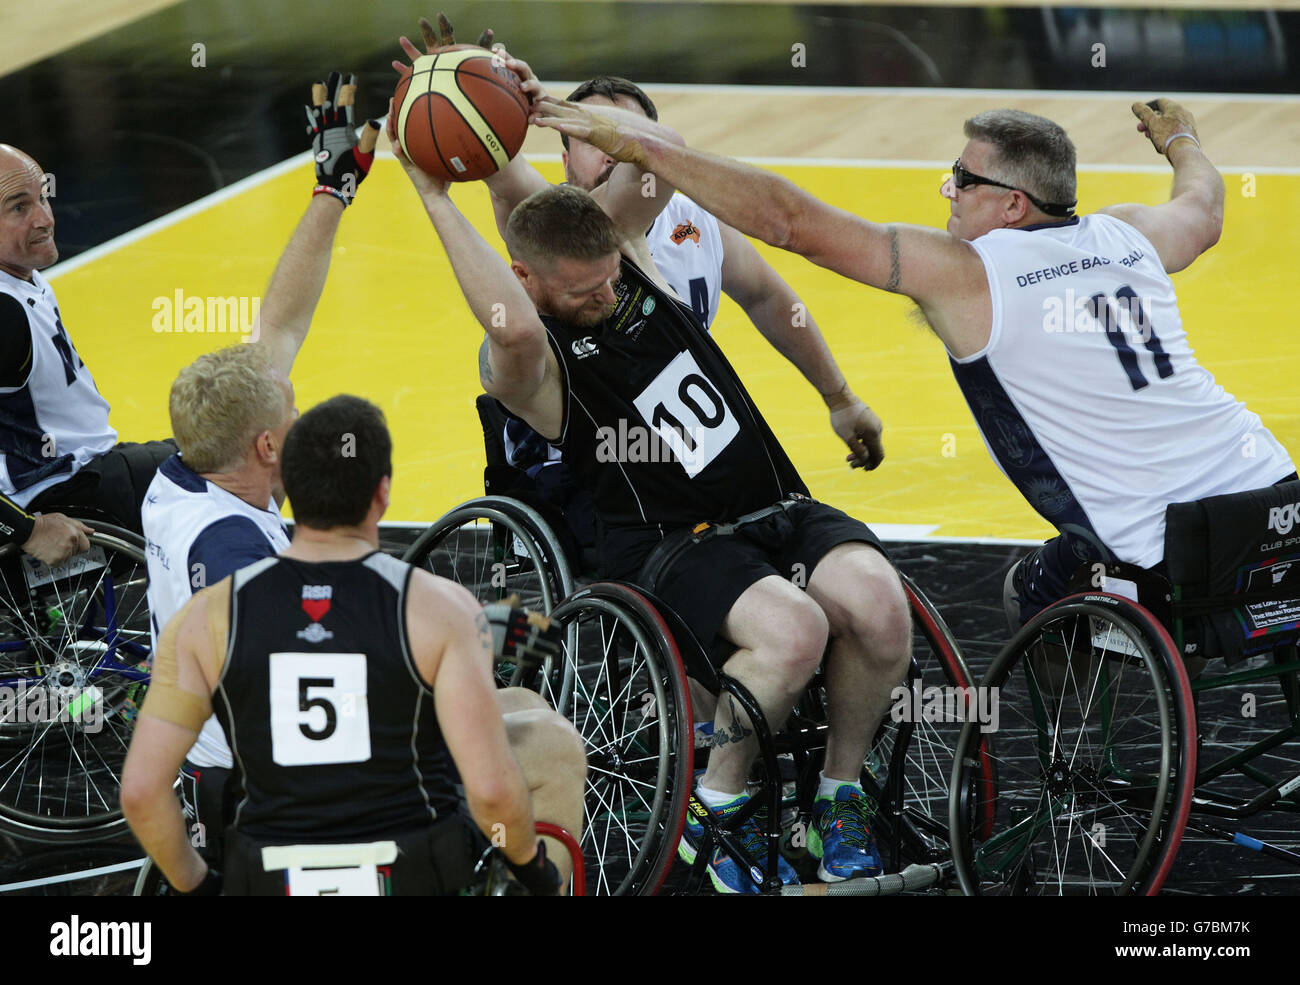 Karl Shearsby aus Neuseeland versucht, während ihres Rollstuhlbasketballspiels in der Copper Box Arena, Queen Elizabeth Olympic Park, London, am vierten Tag des Invictus Games Leichtathletik-Wettbewerbs den Ball gegen Australien zu halten. Stockfoto